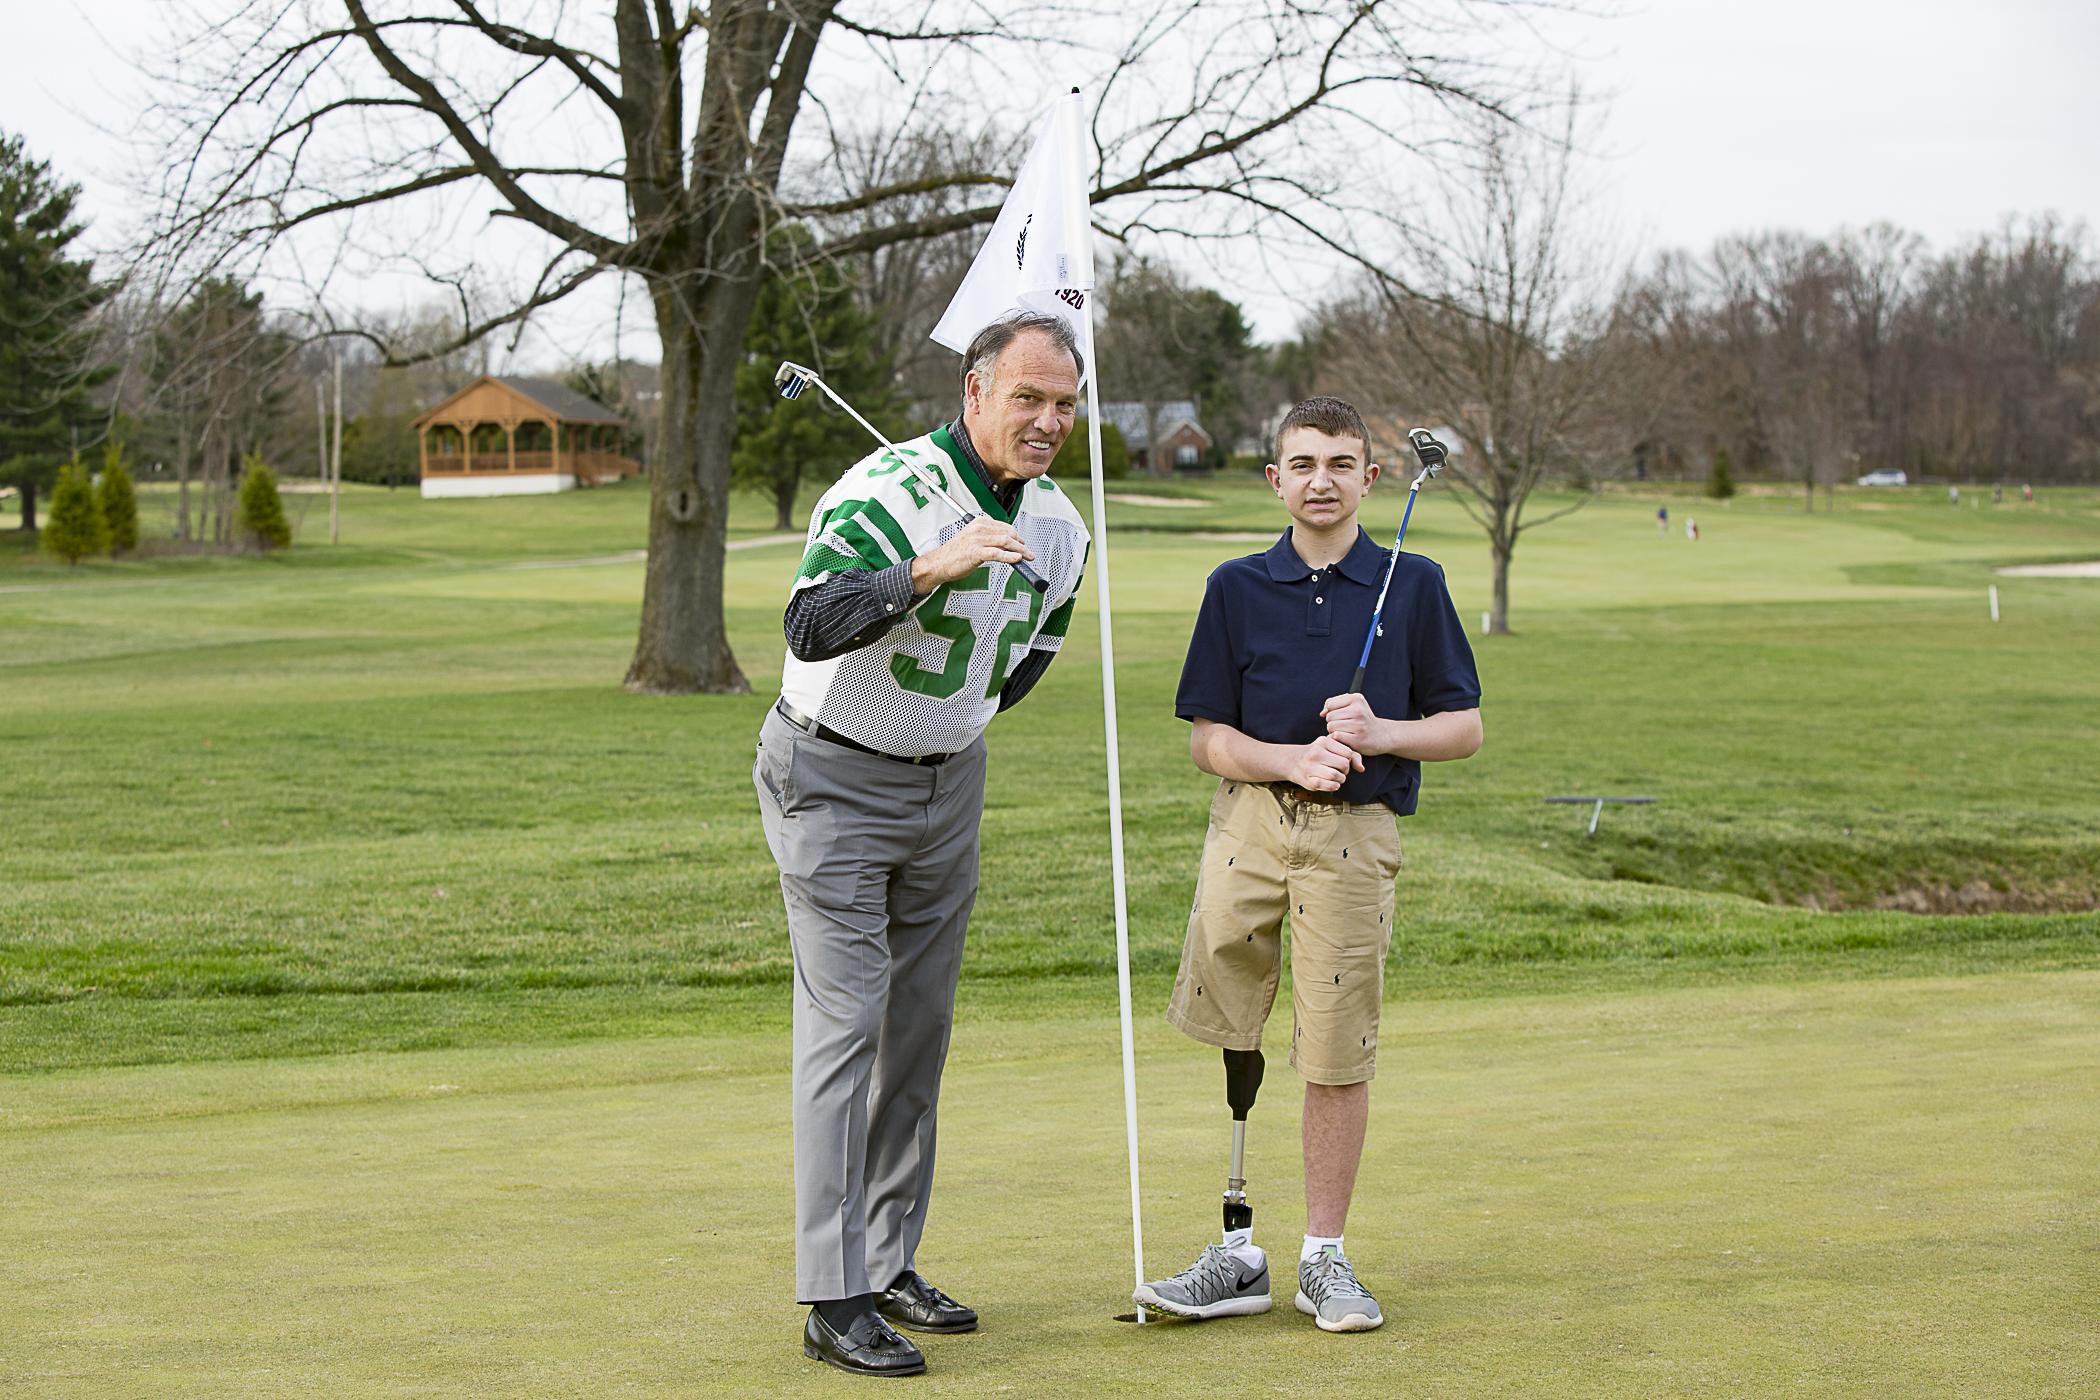 Third Annual Charity Golf Tournament